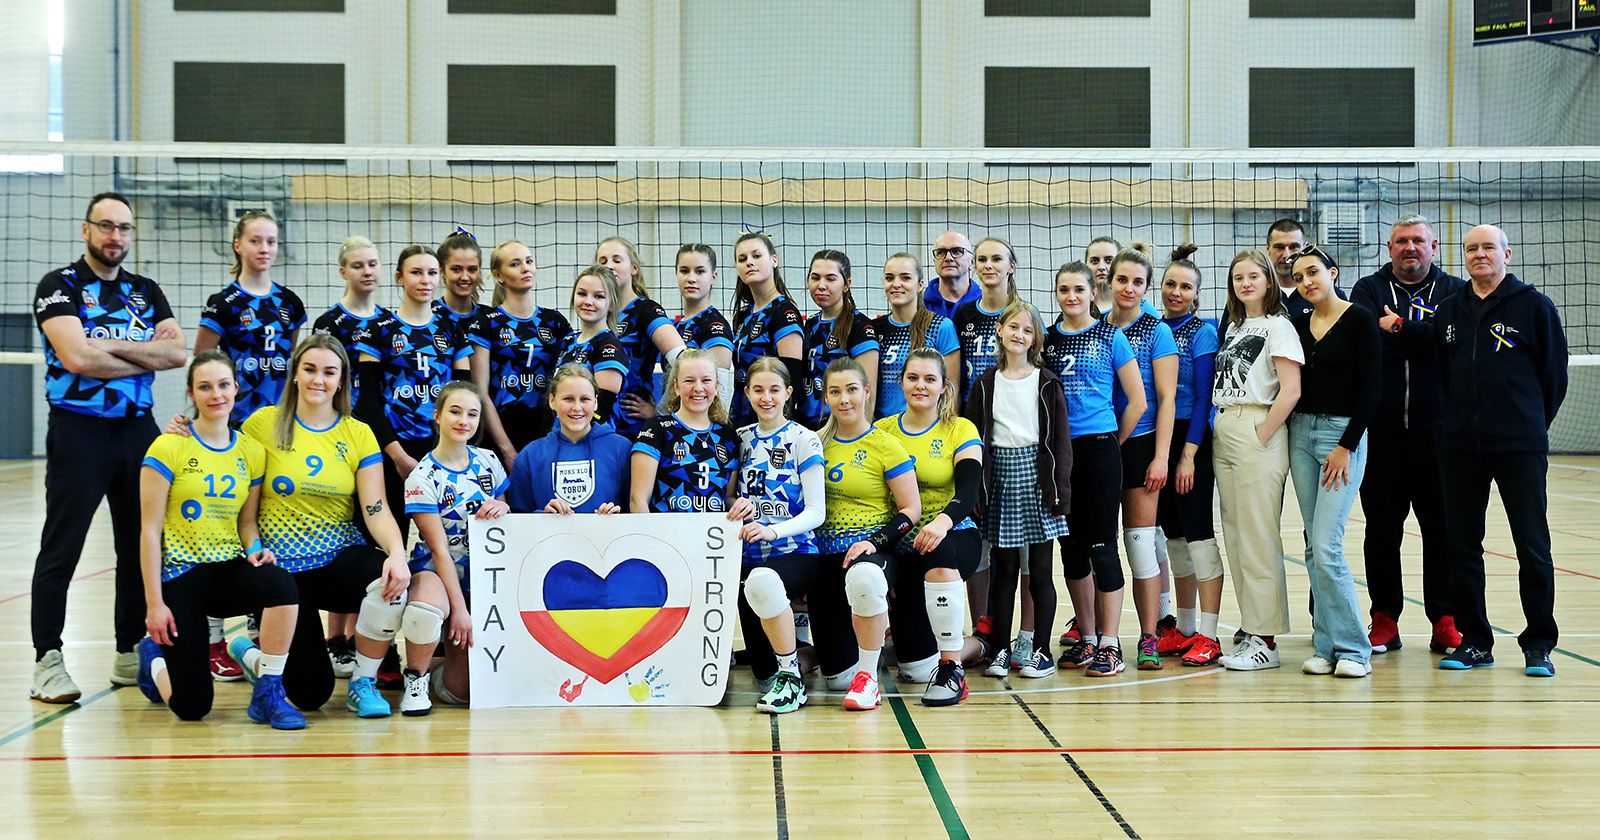  Grupa zawodniczek-siatkarek i trenerów stoi w hali sportowej przed siatką z plakatem o treści "stay strong" i sercem w  kolorach flagi Ukrainy